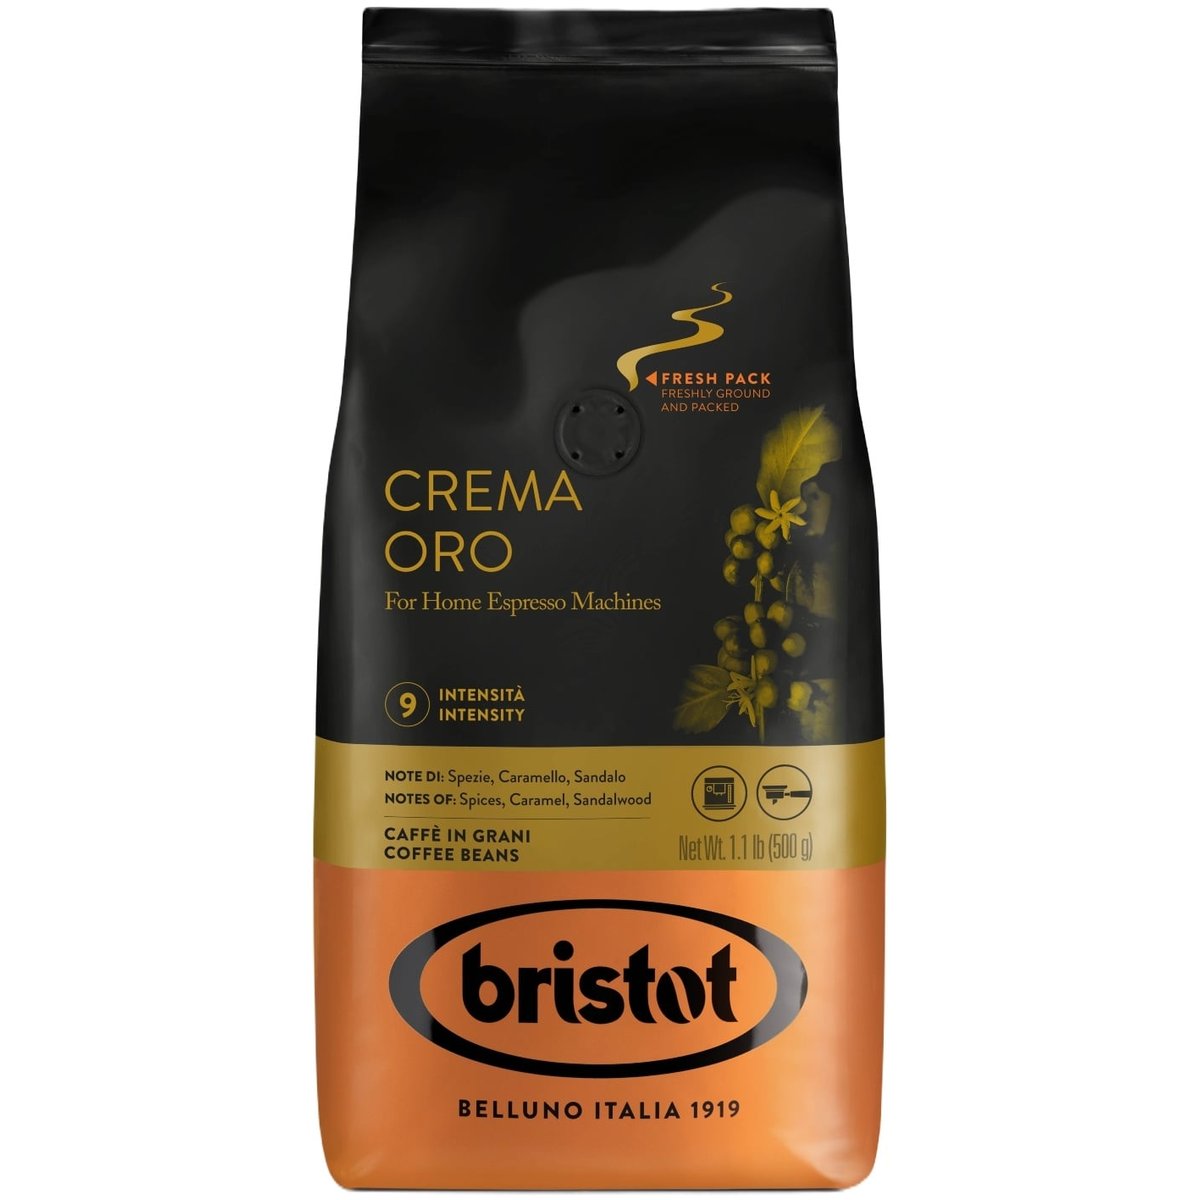 Bristot Crema Oro zrnková káva v akci